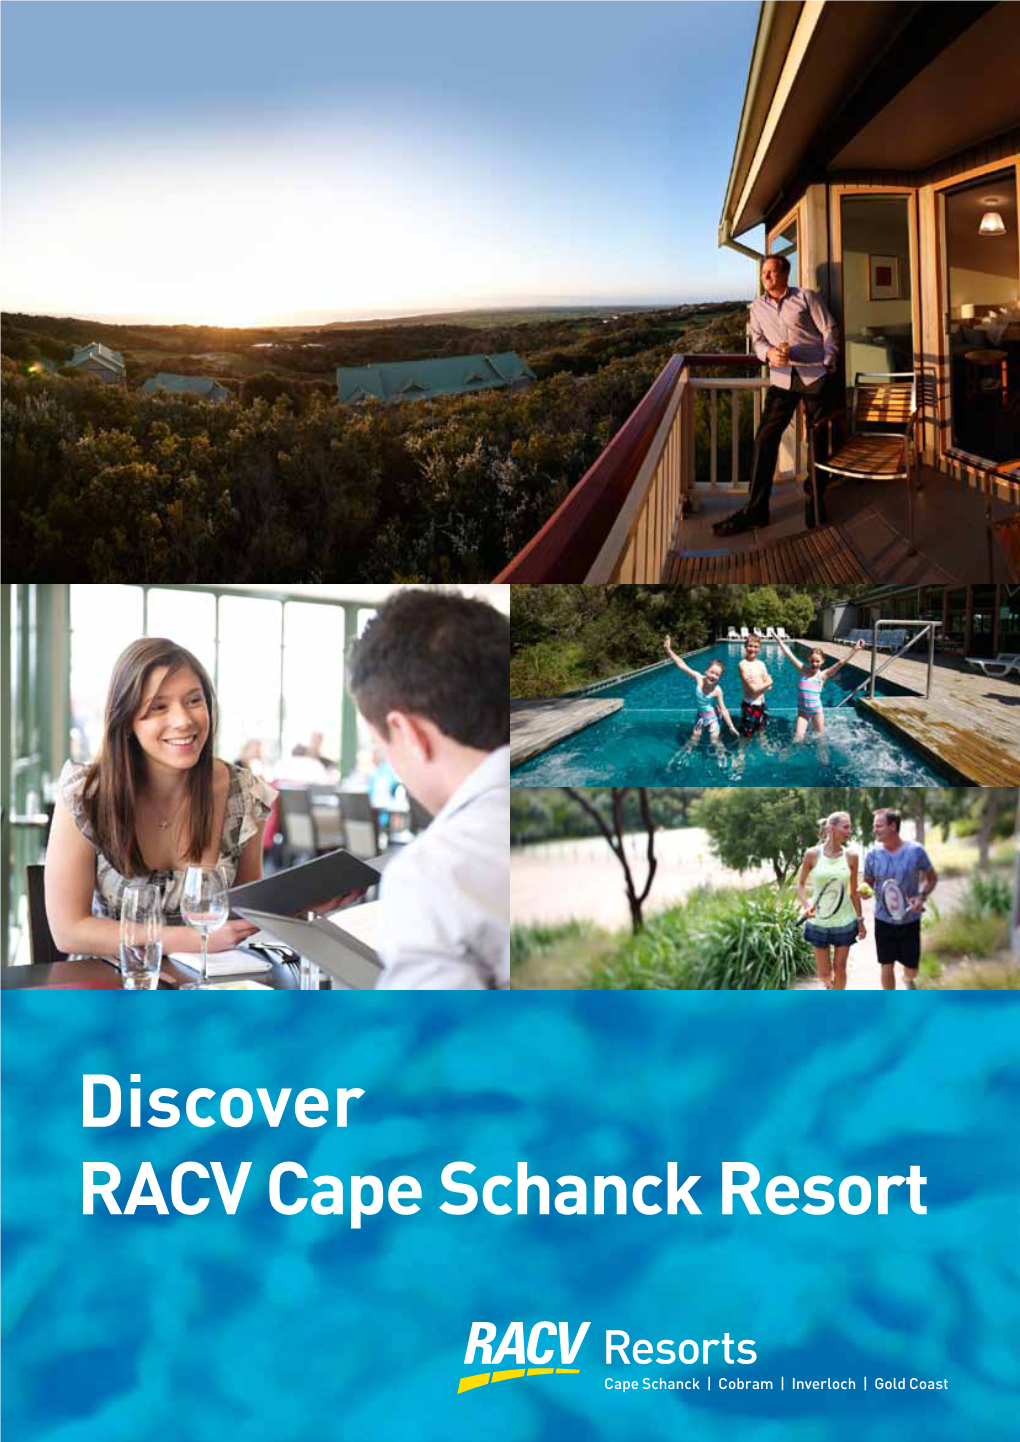 RACV Cape Schanck Resort